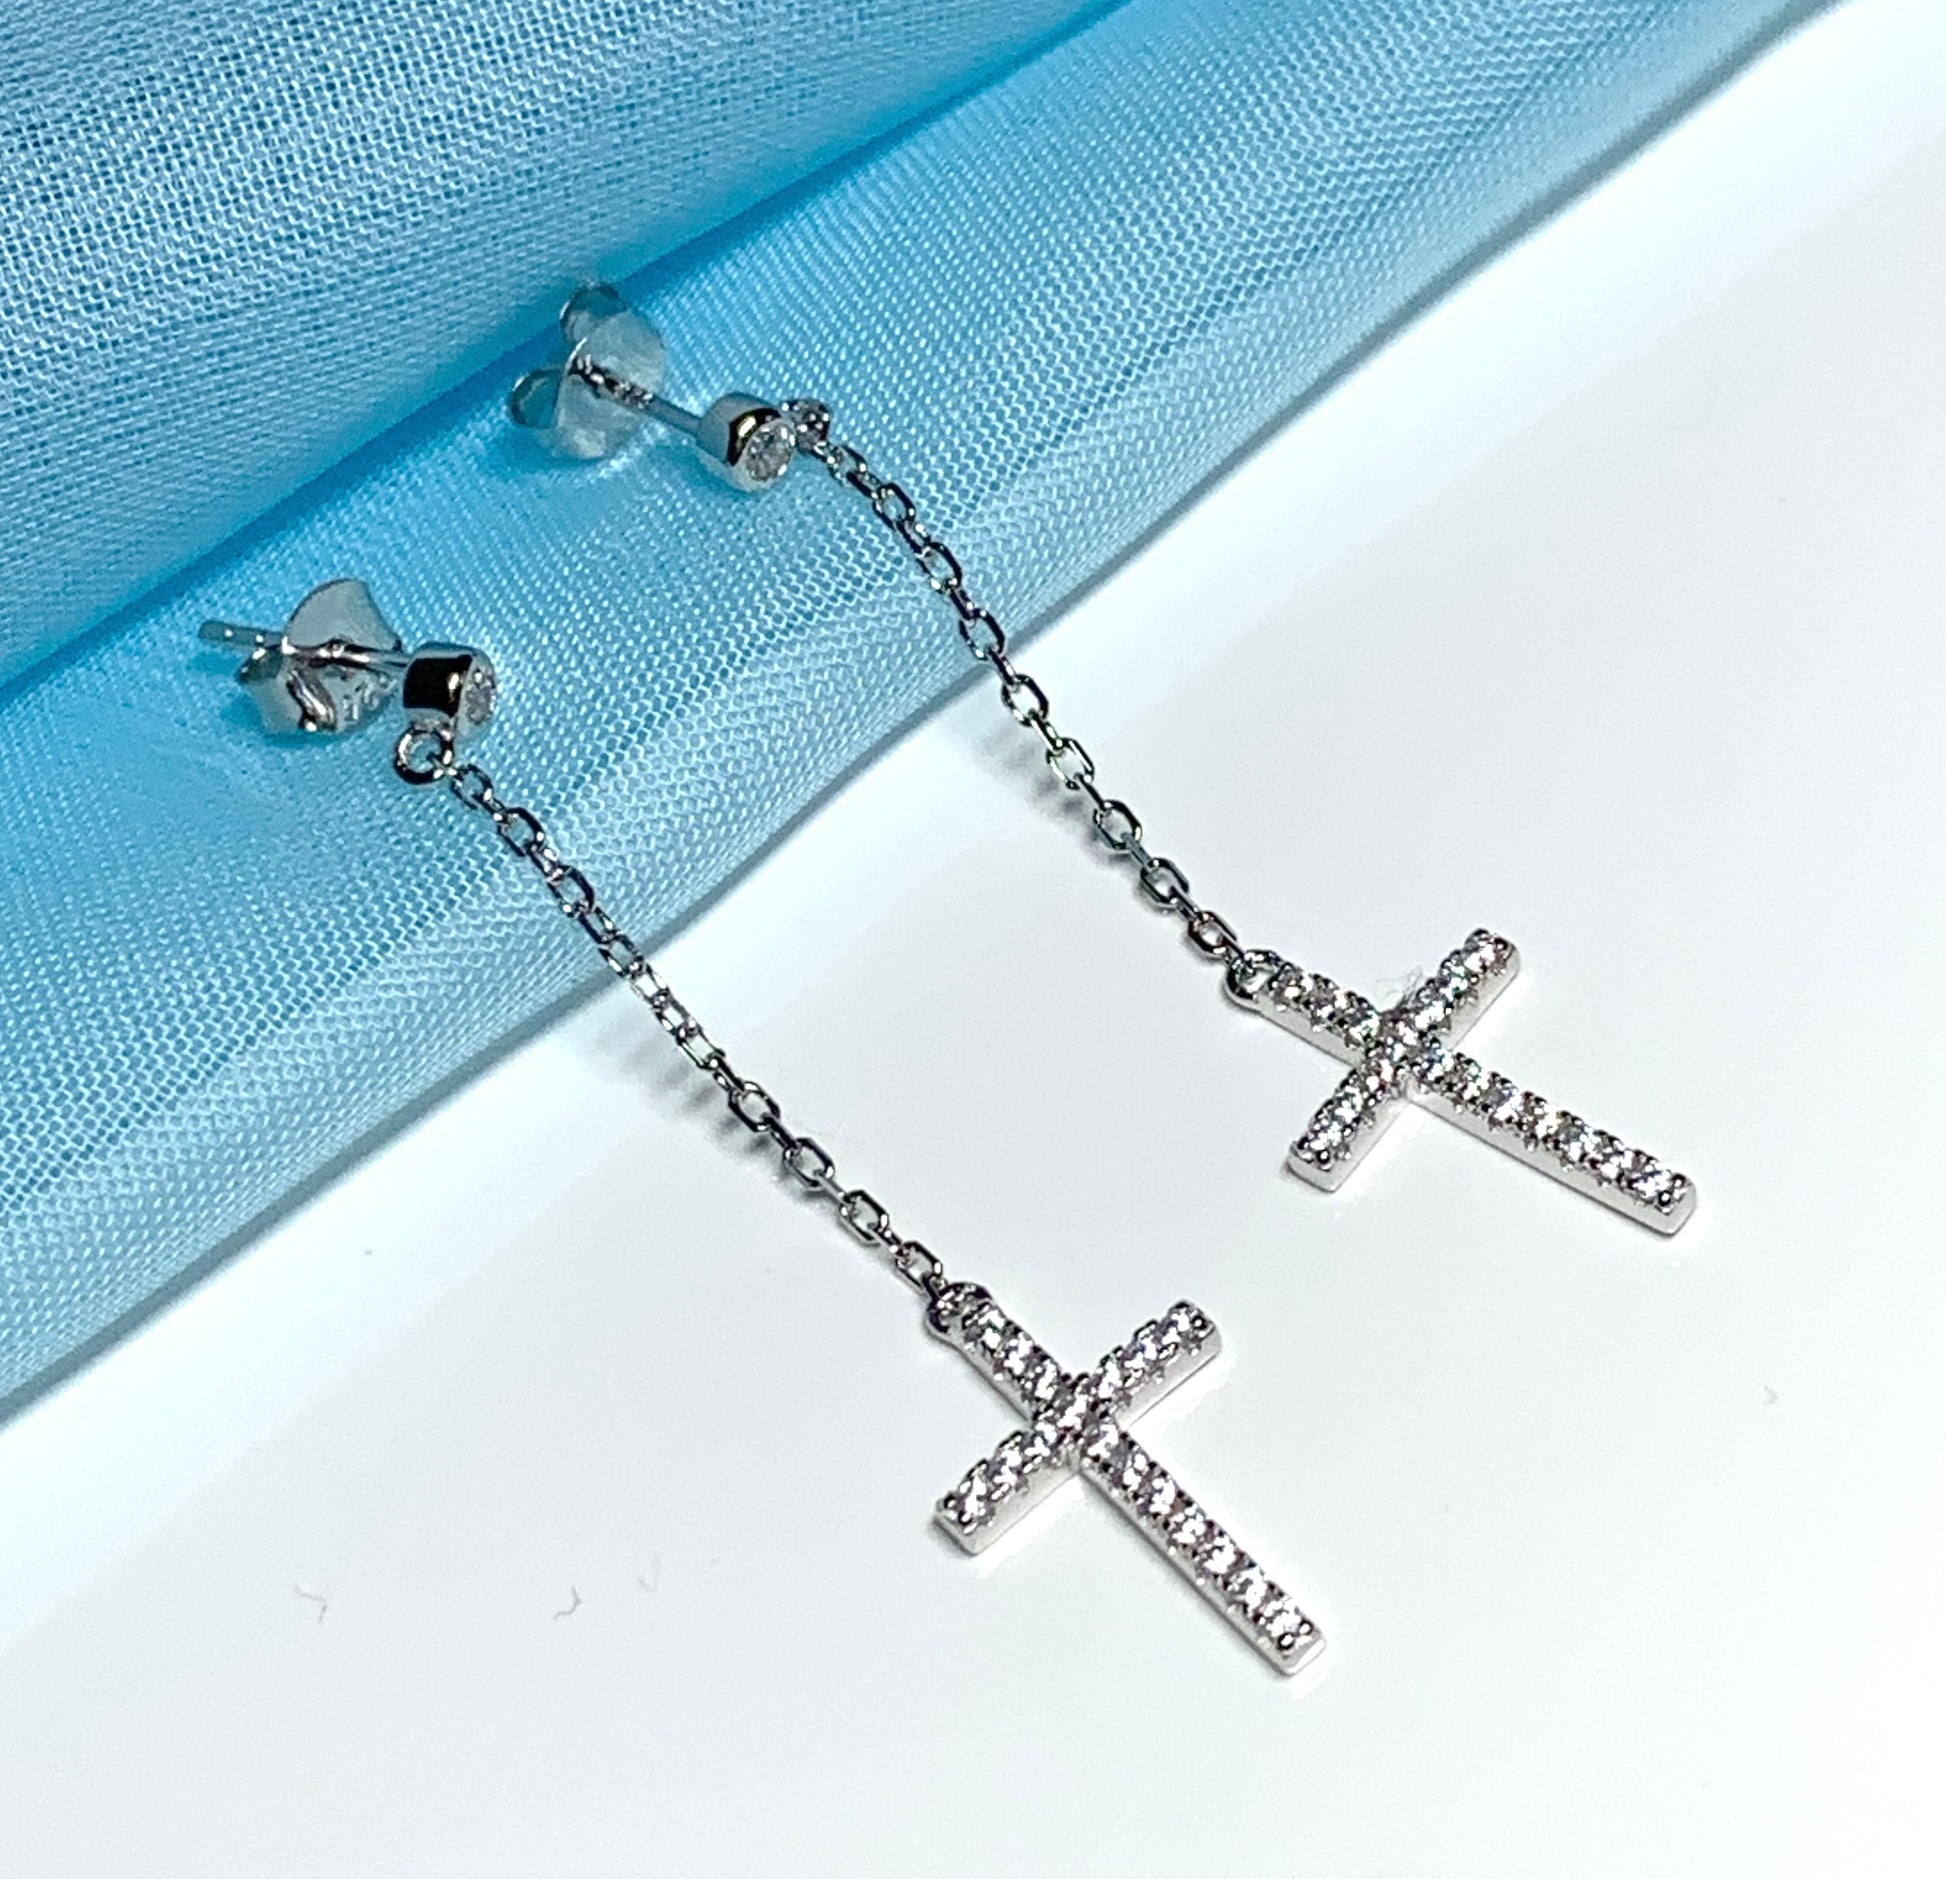 Cross earrings long drop sparkling stone set cubic zirconia sterling silver